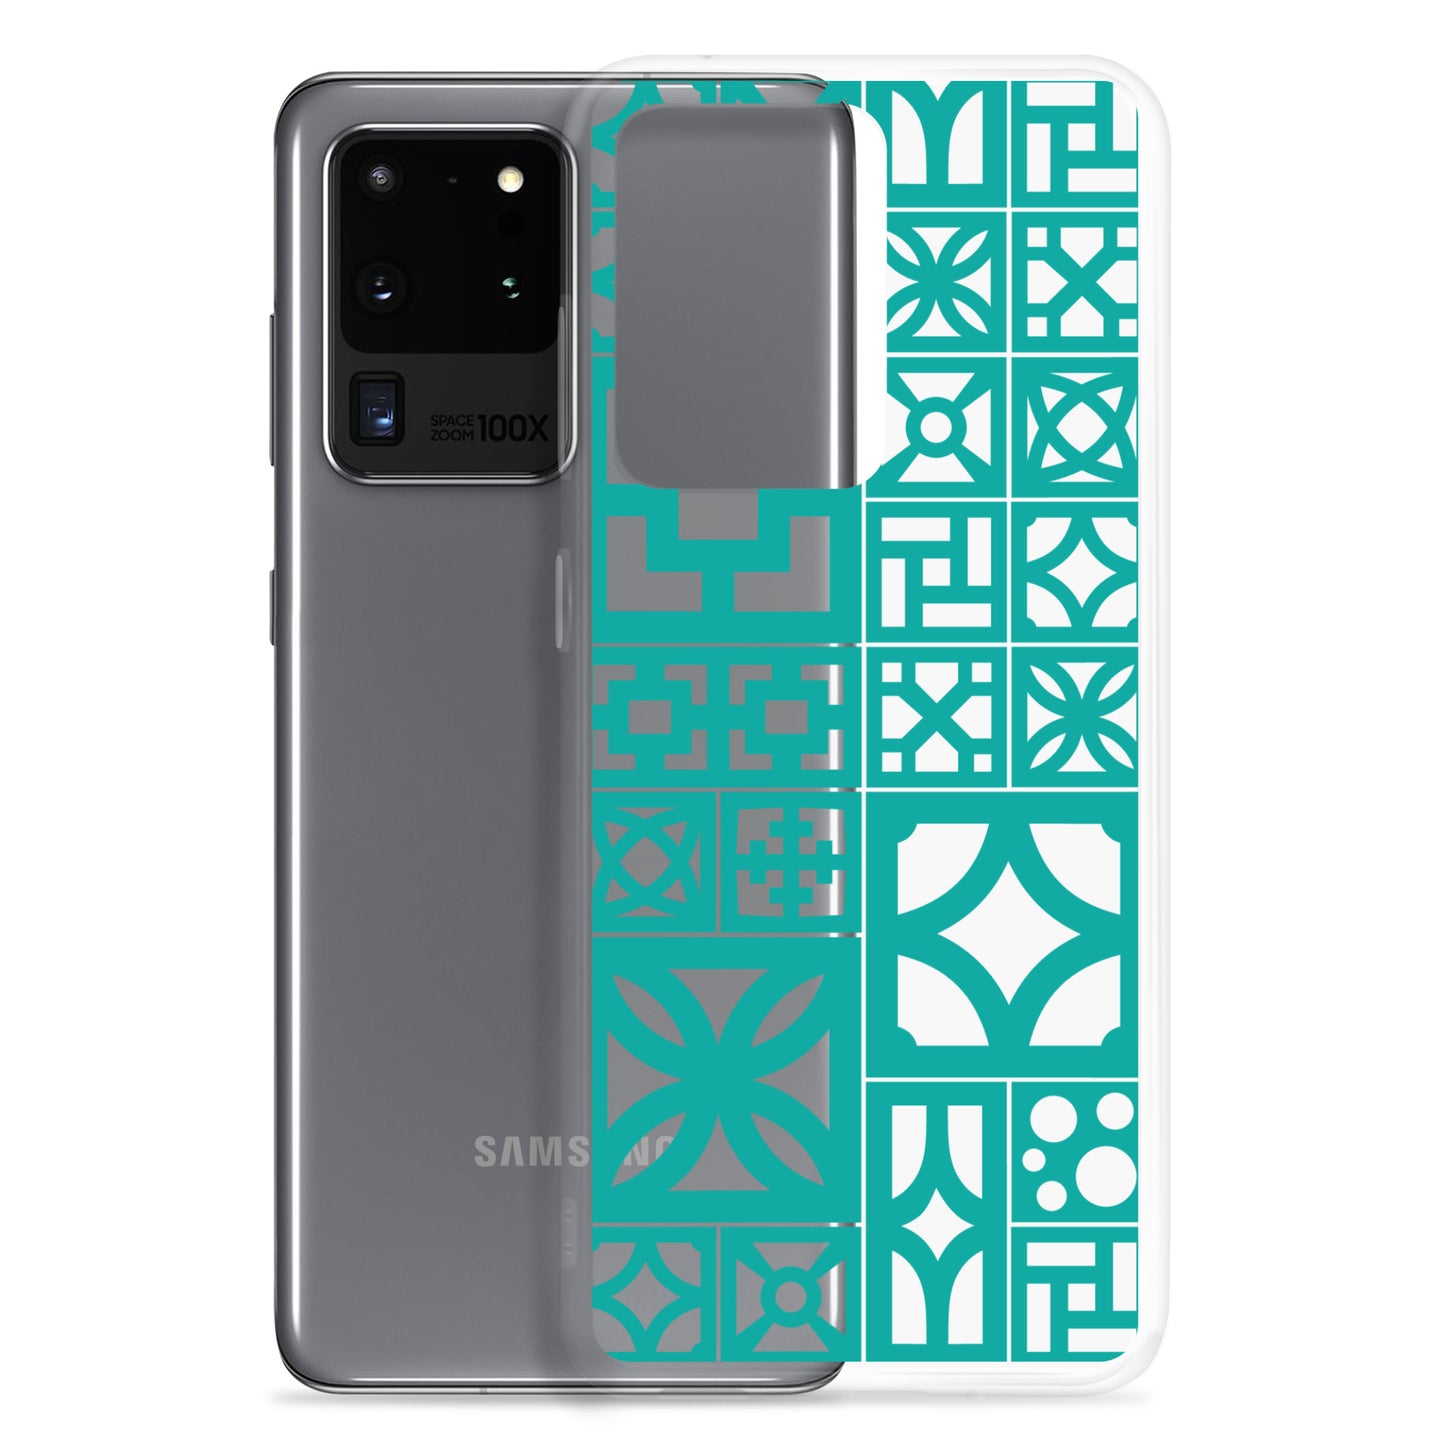 Clear Samsung Breeze Block "Motif" Case -Aqua